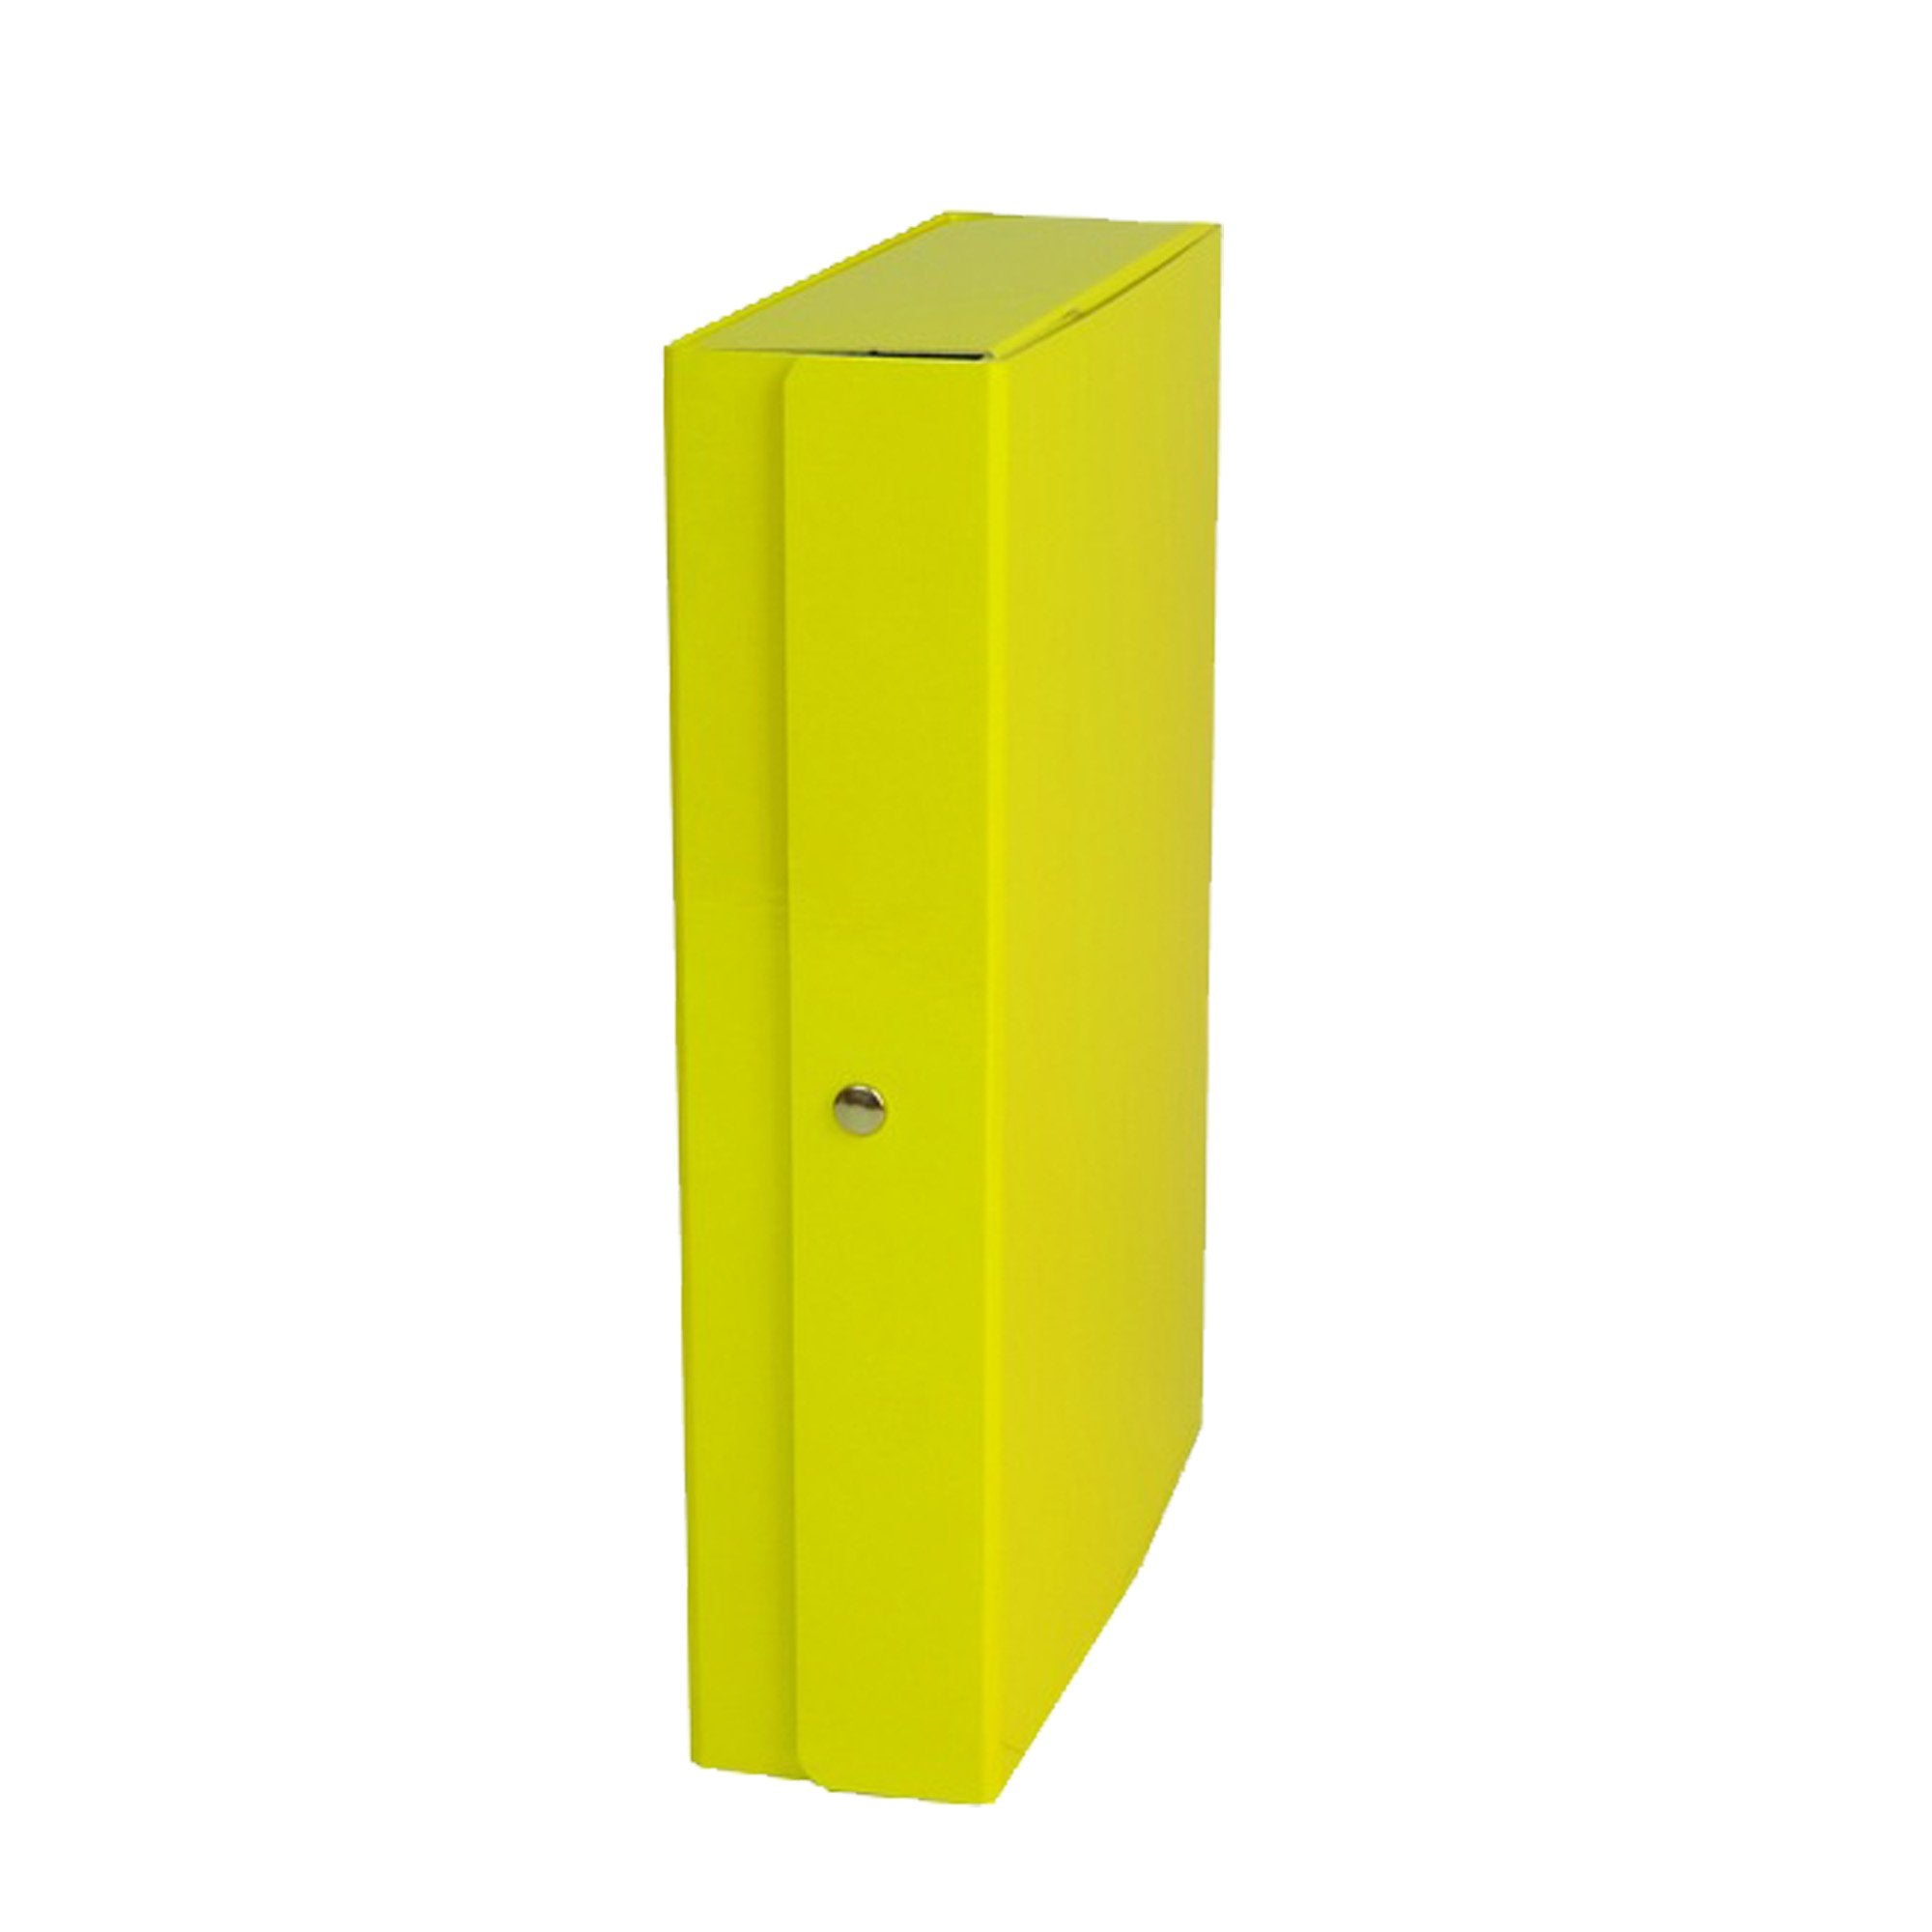 starline-scatola-progetto-8-giallo-glossy